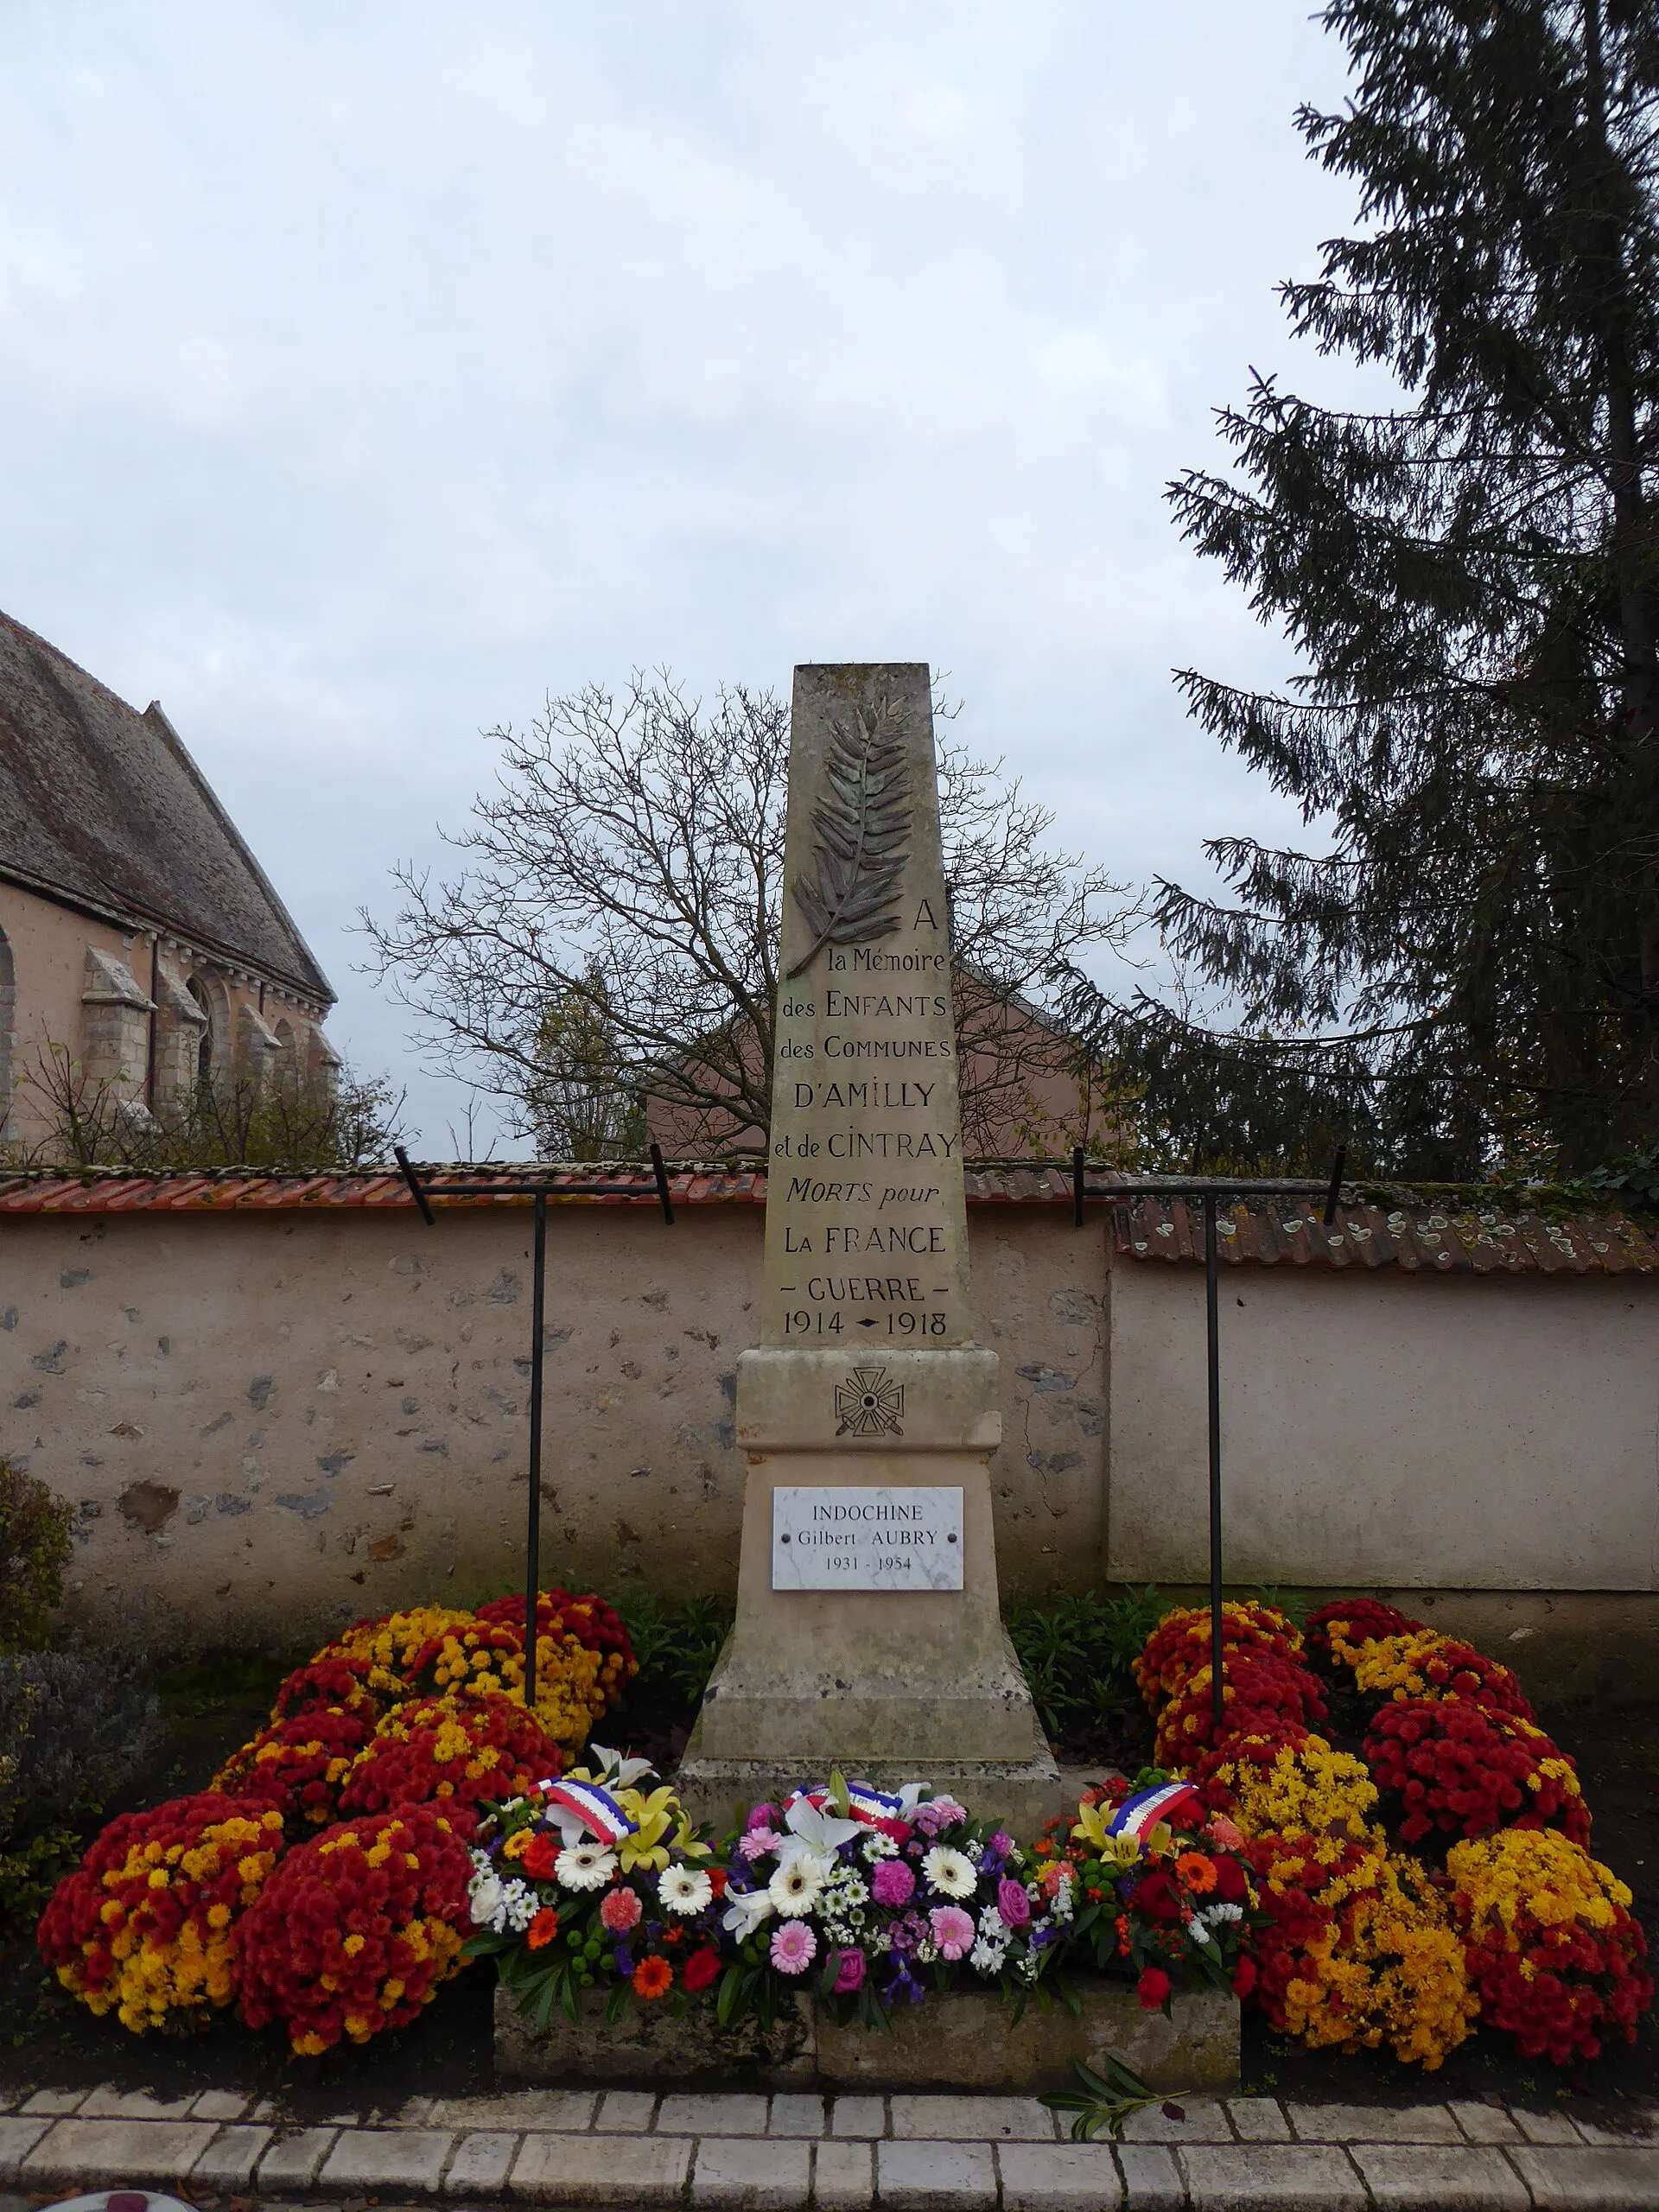 Photo showing: Monument aux morts d'Amilly, commun avec Cintray, Eure-et-Loir France.